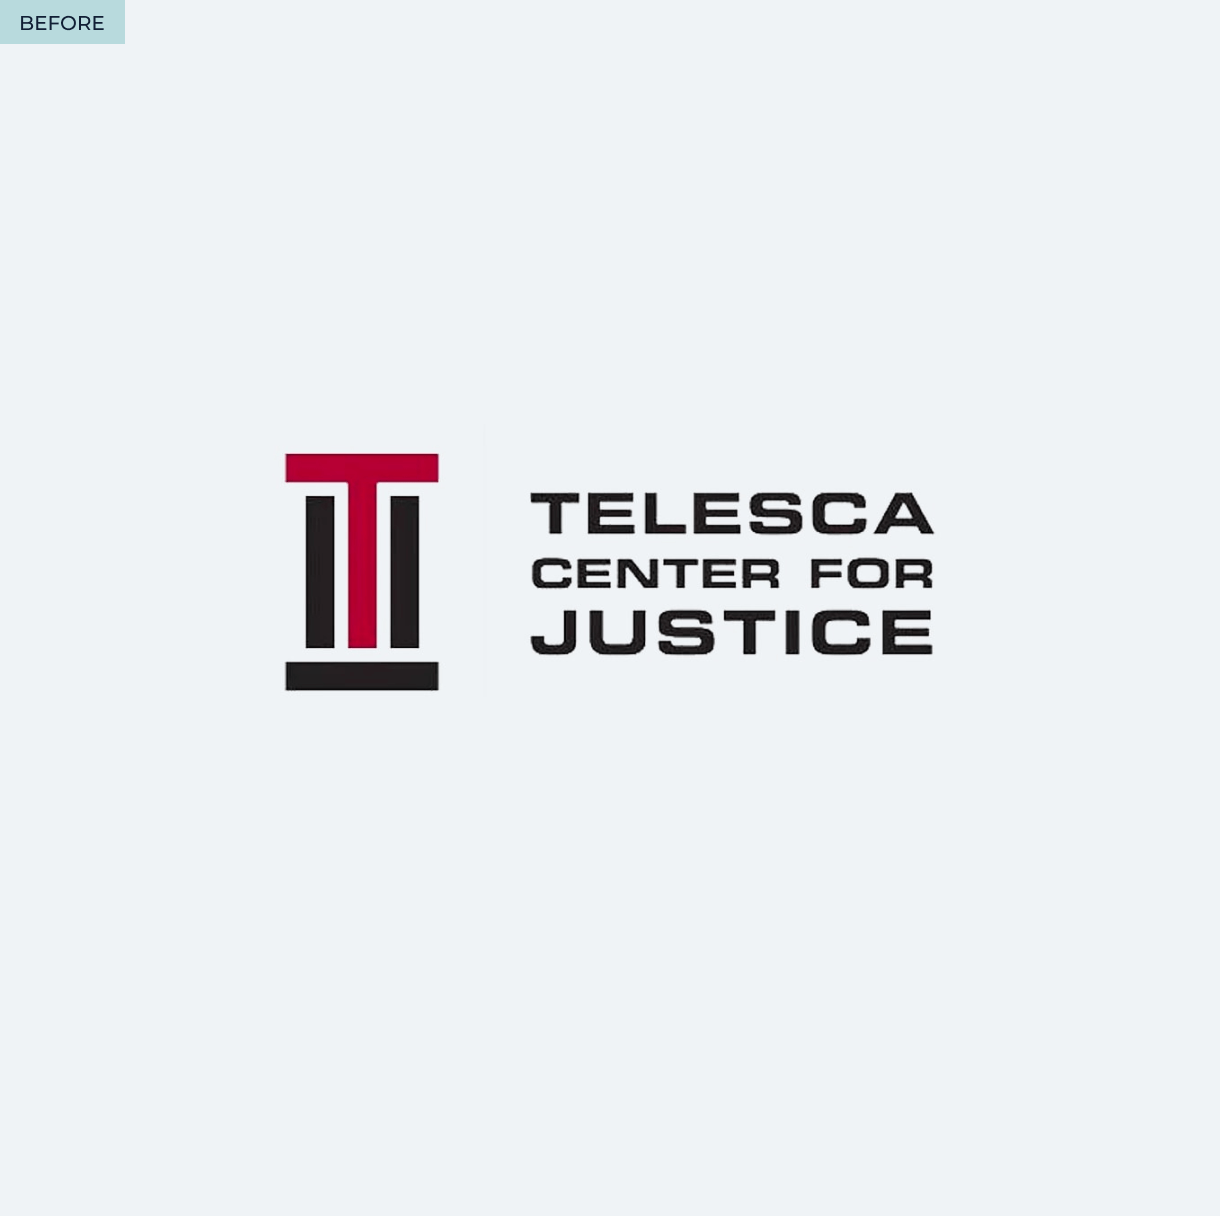 telesca_logo-before